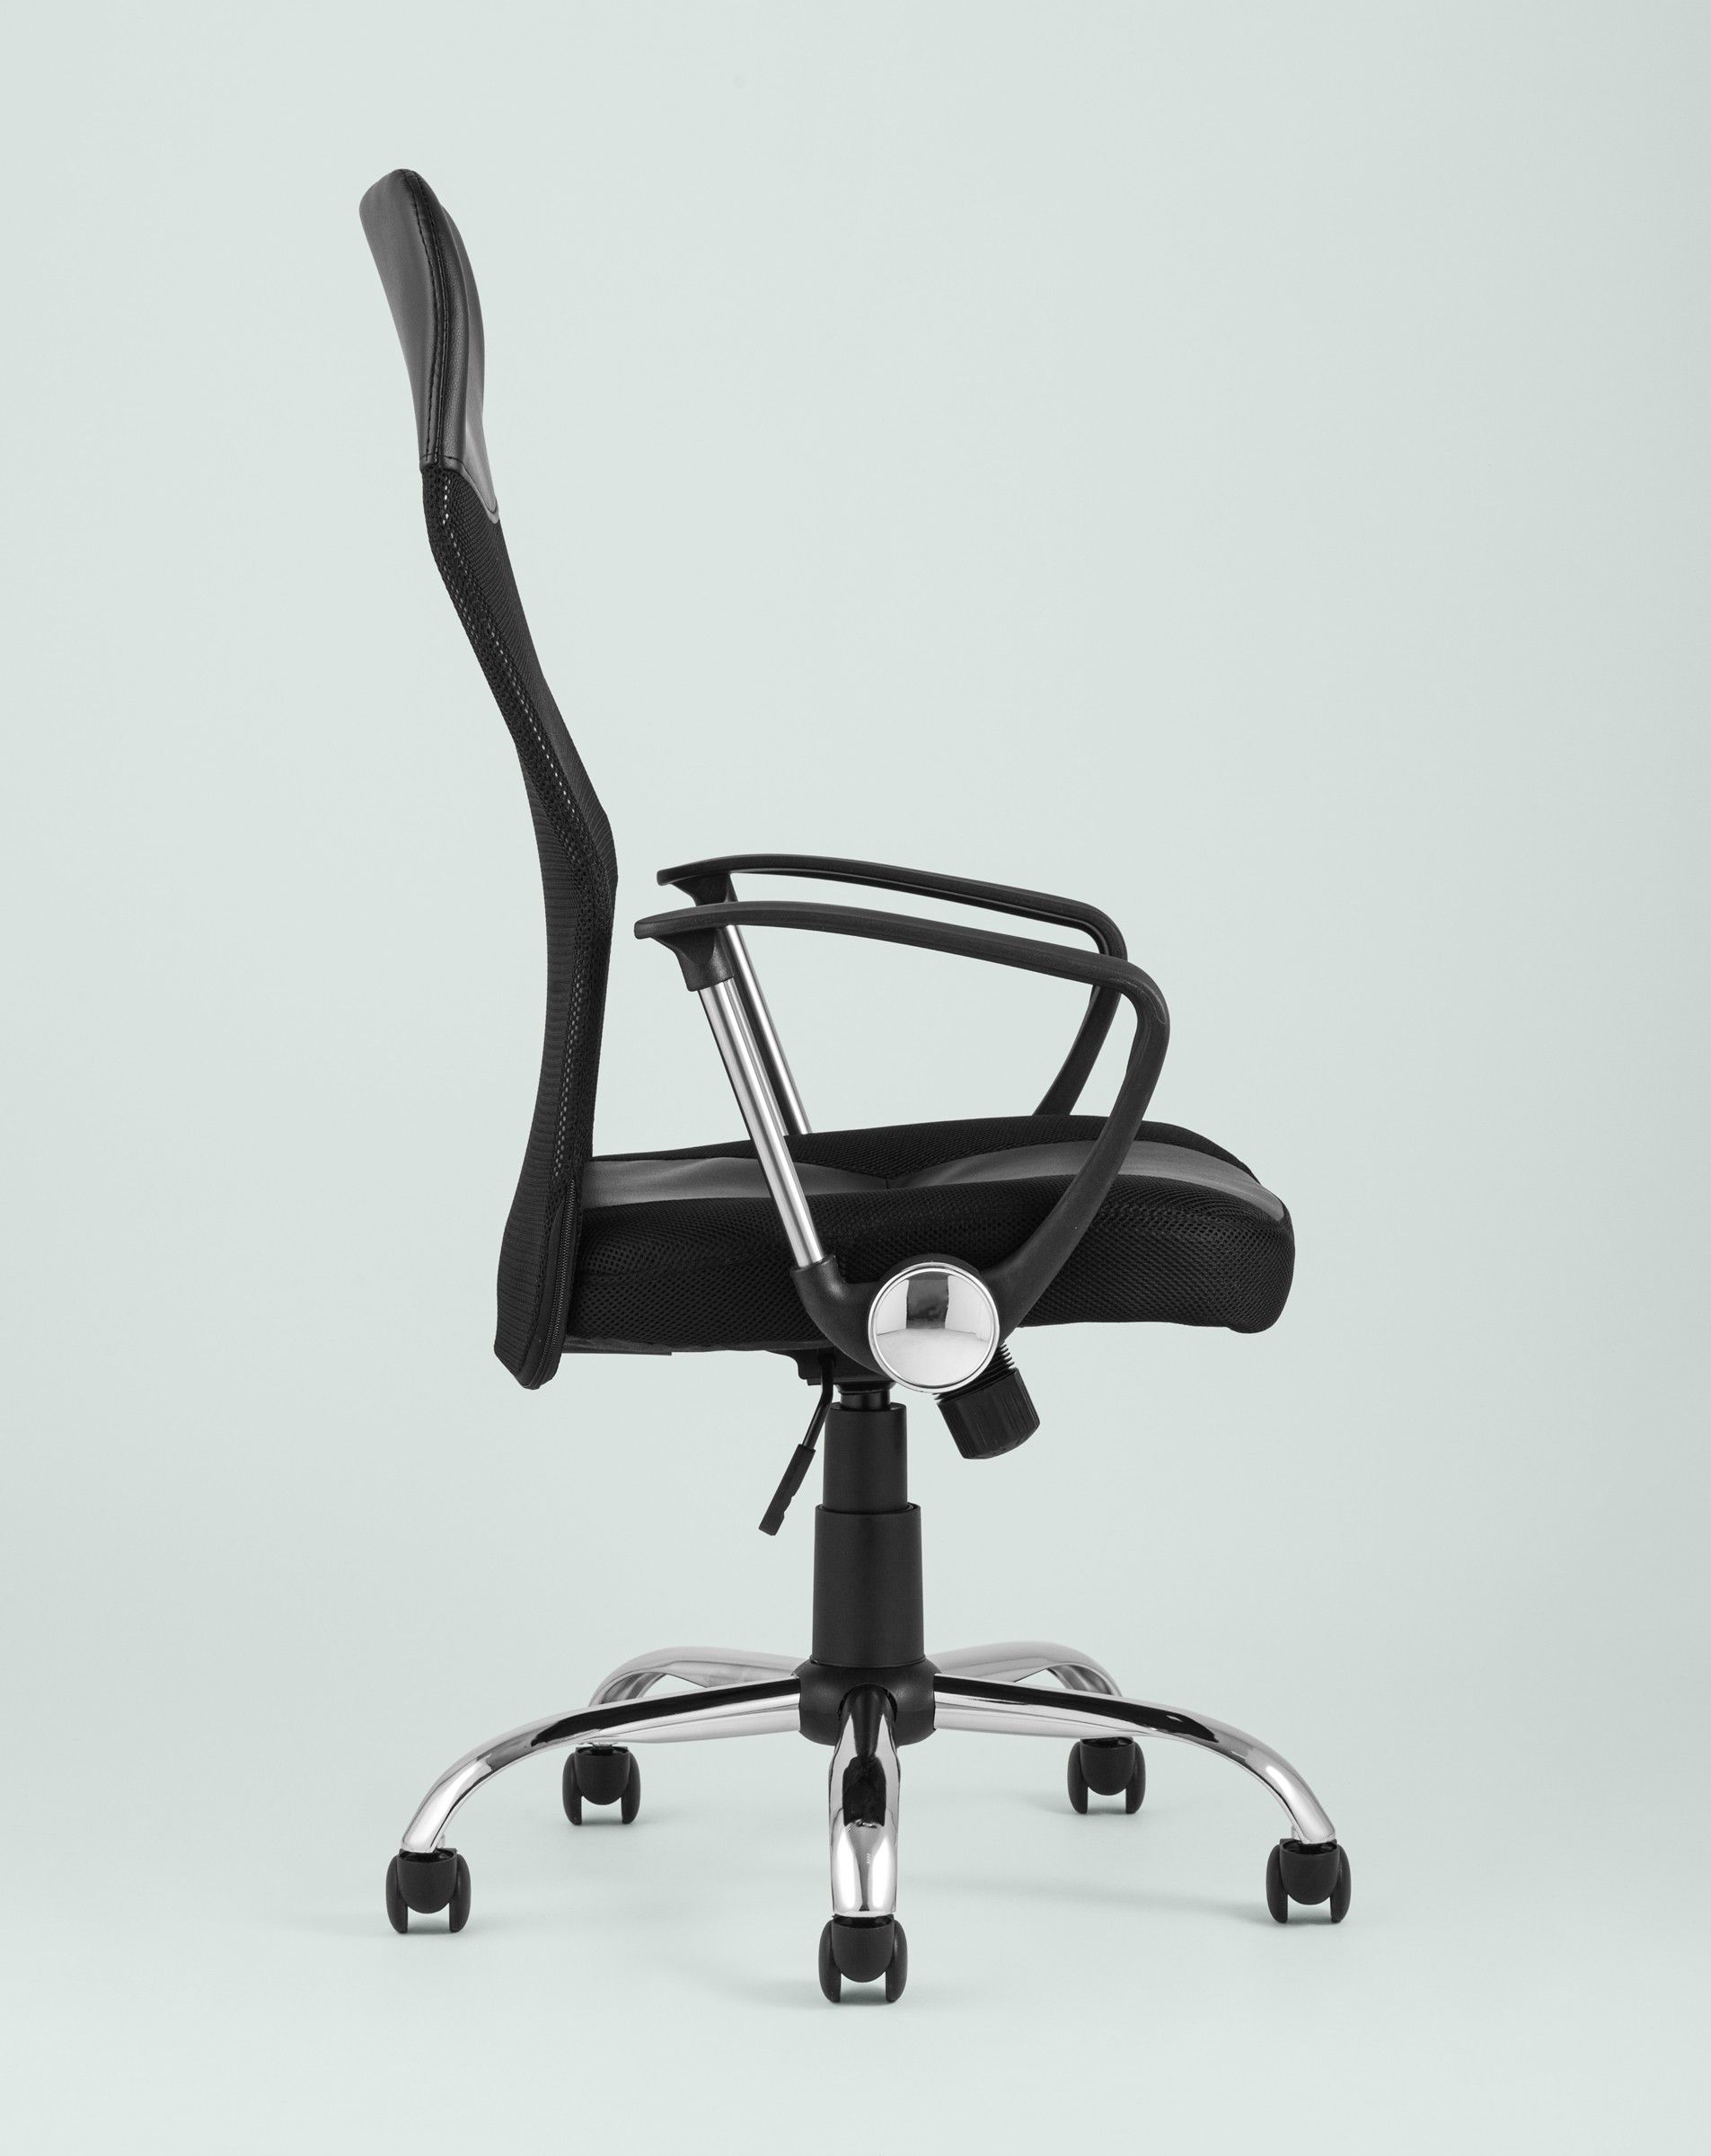 Кресло офисное TopChairs Benefit черная сетка